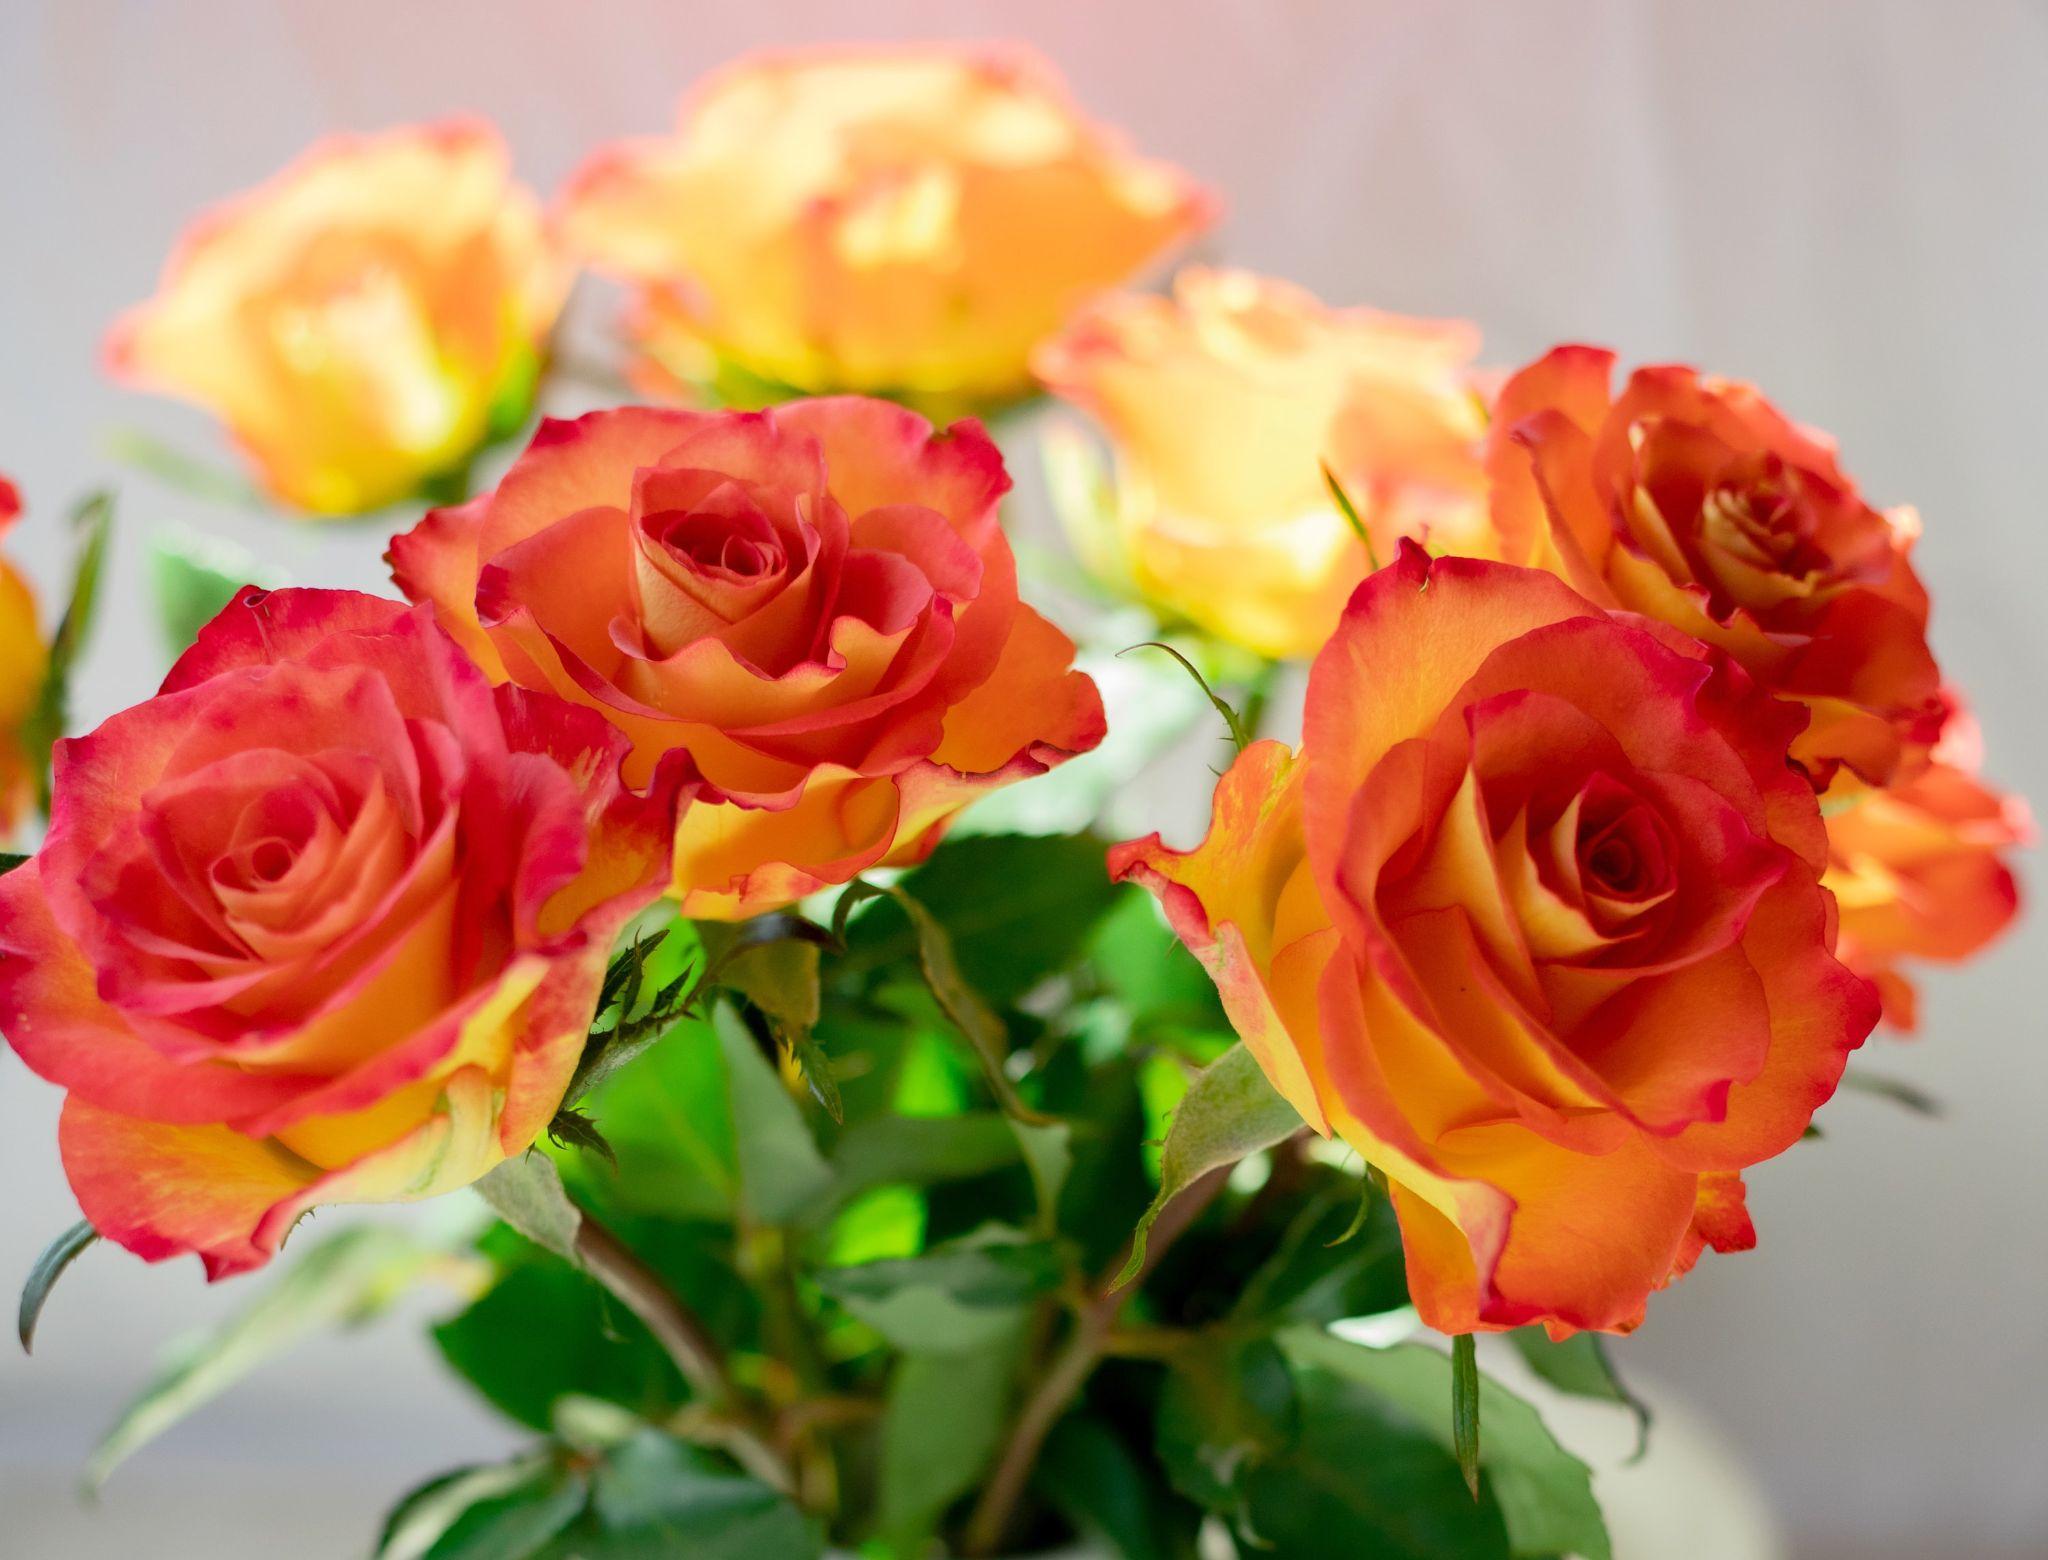 Hình nền hoa hồng vàng cực đẹp | Hoa trong chậu, Hoa hồng vàng, Hình nền hoa